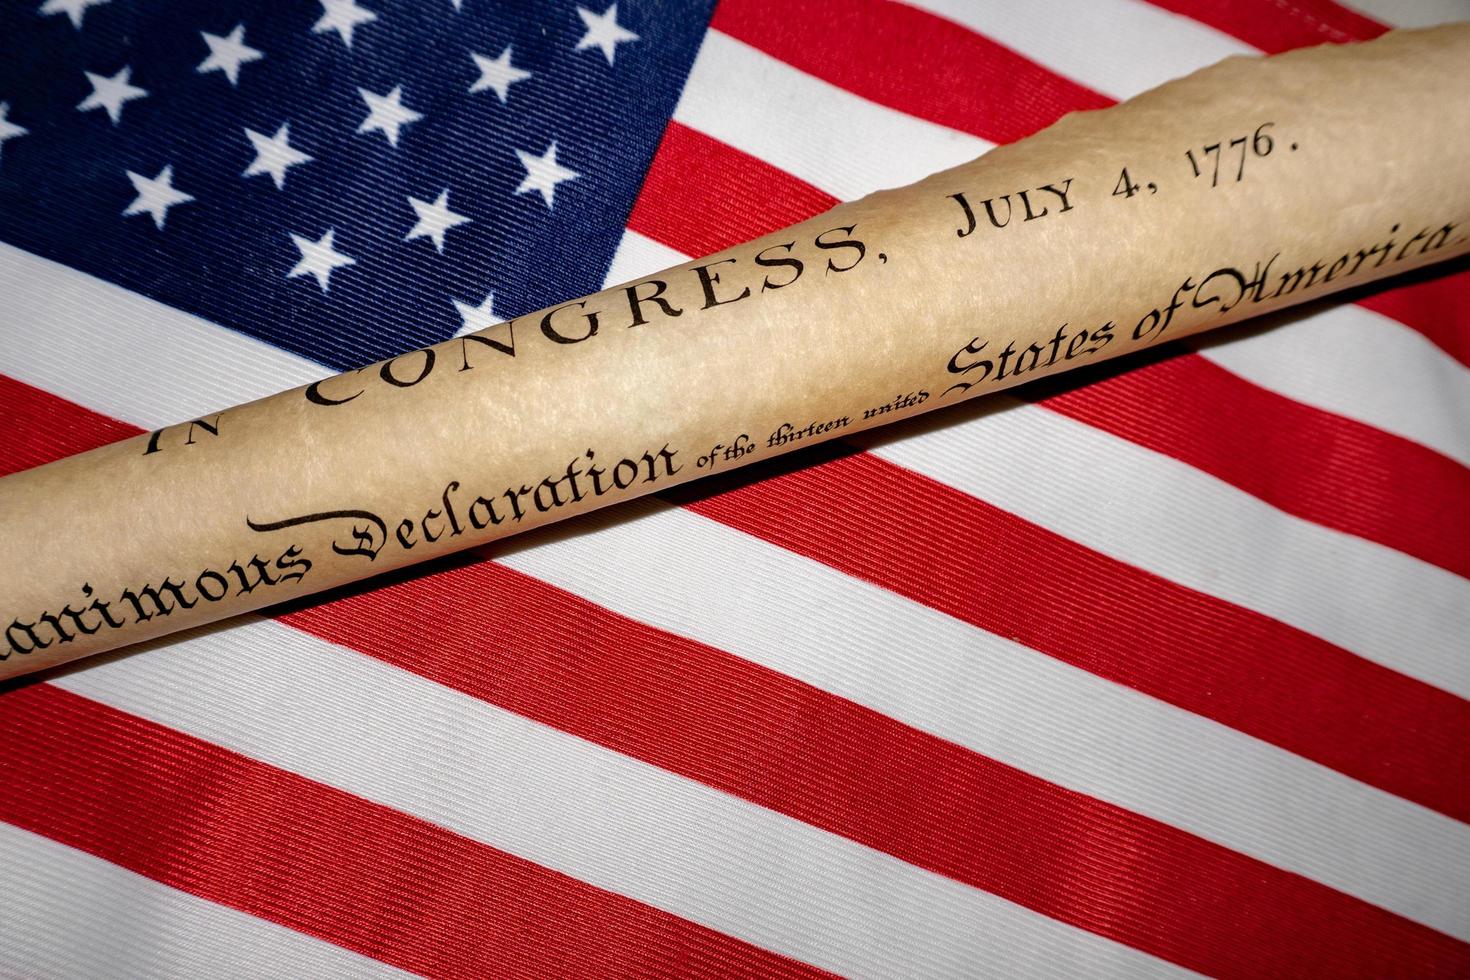 déclaration d'indépendance du 4 juillet 1776 sur le drapeau américain photo